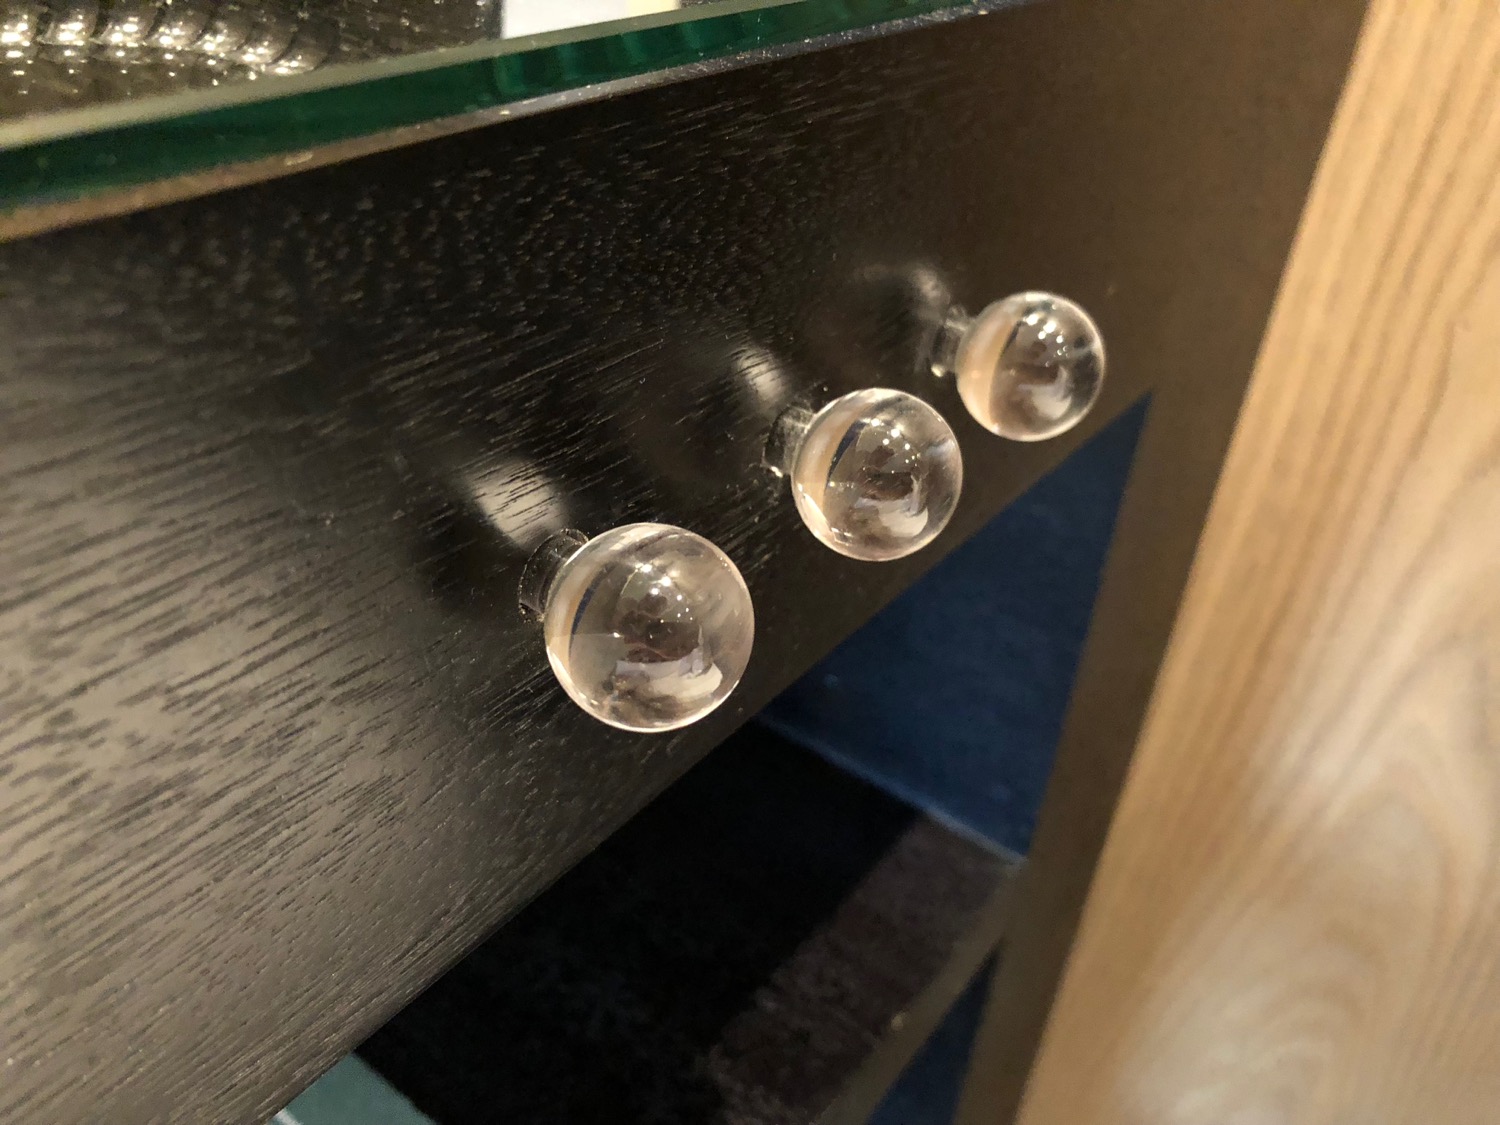 a close up of a glass knob